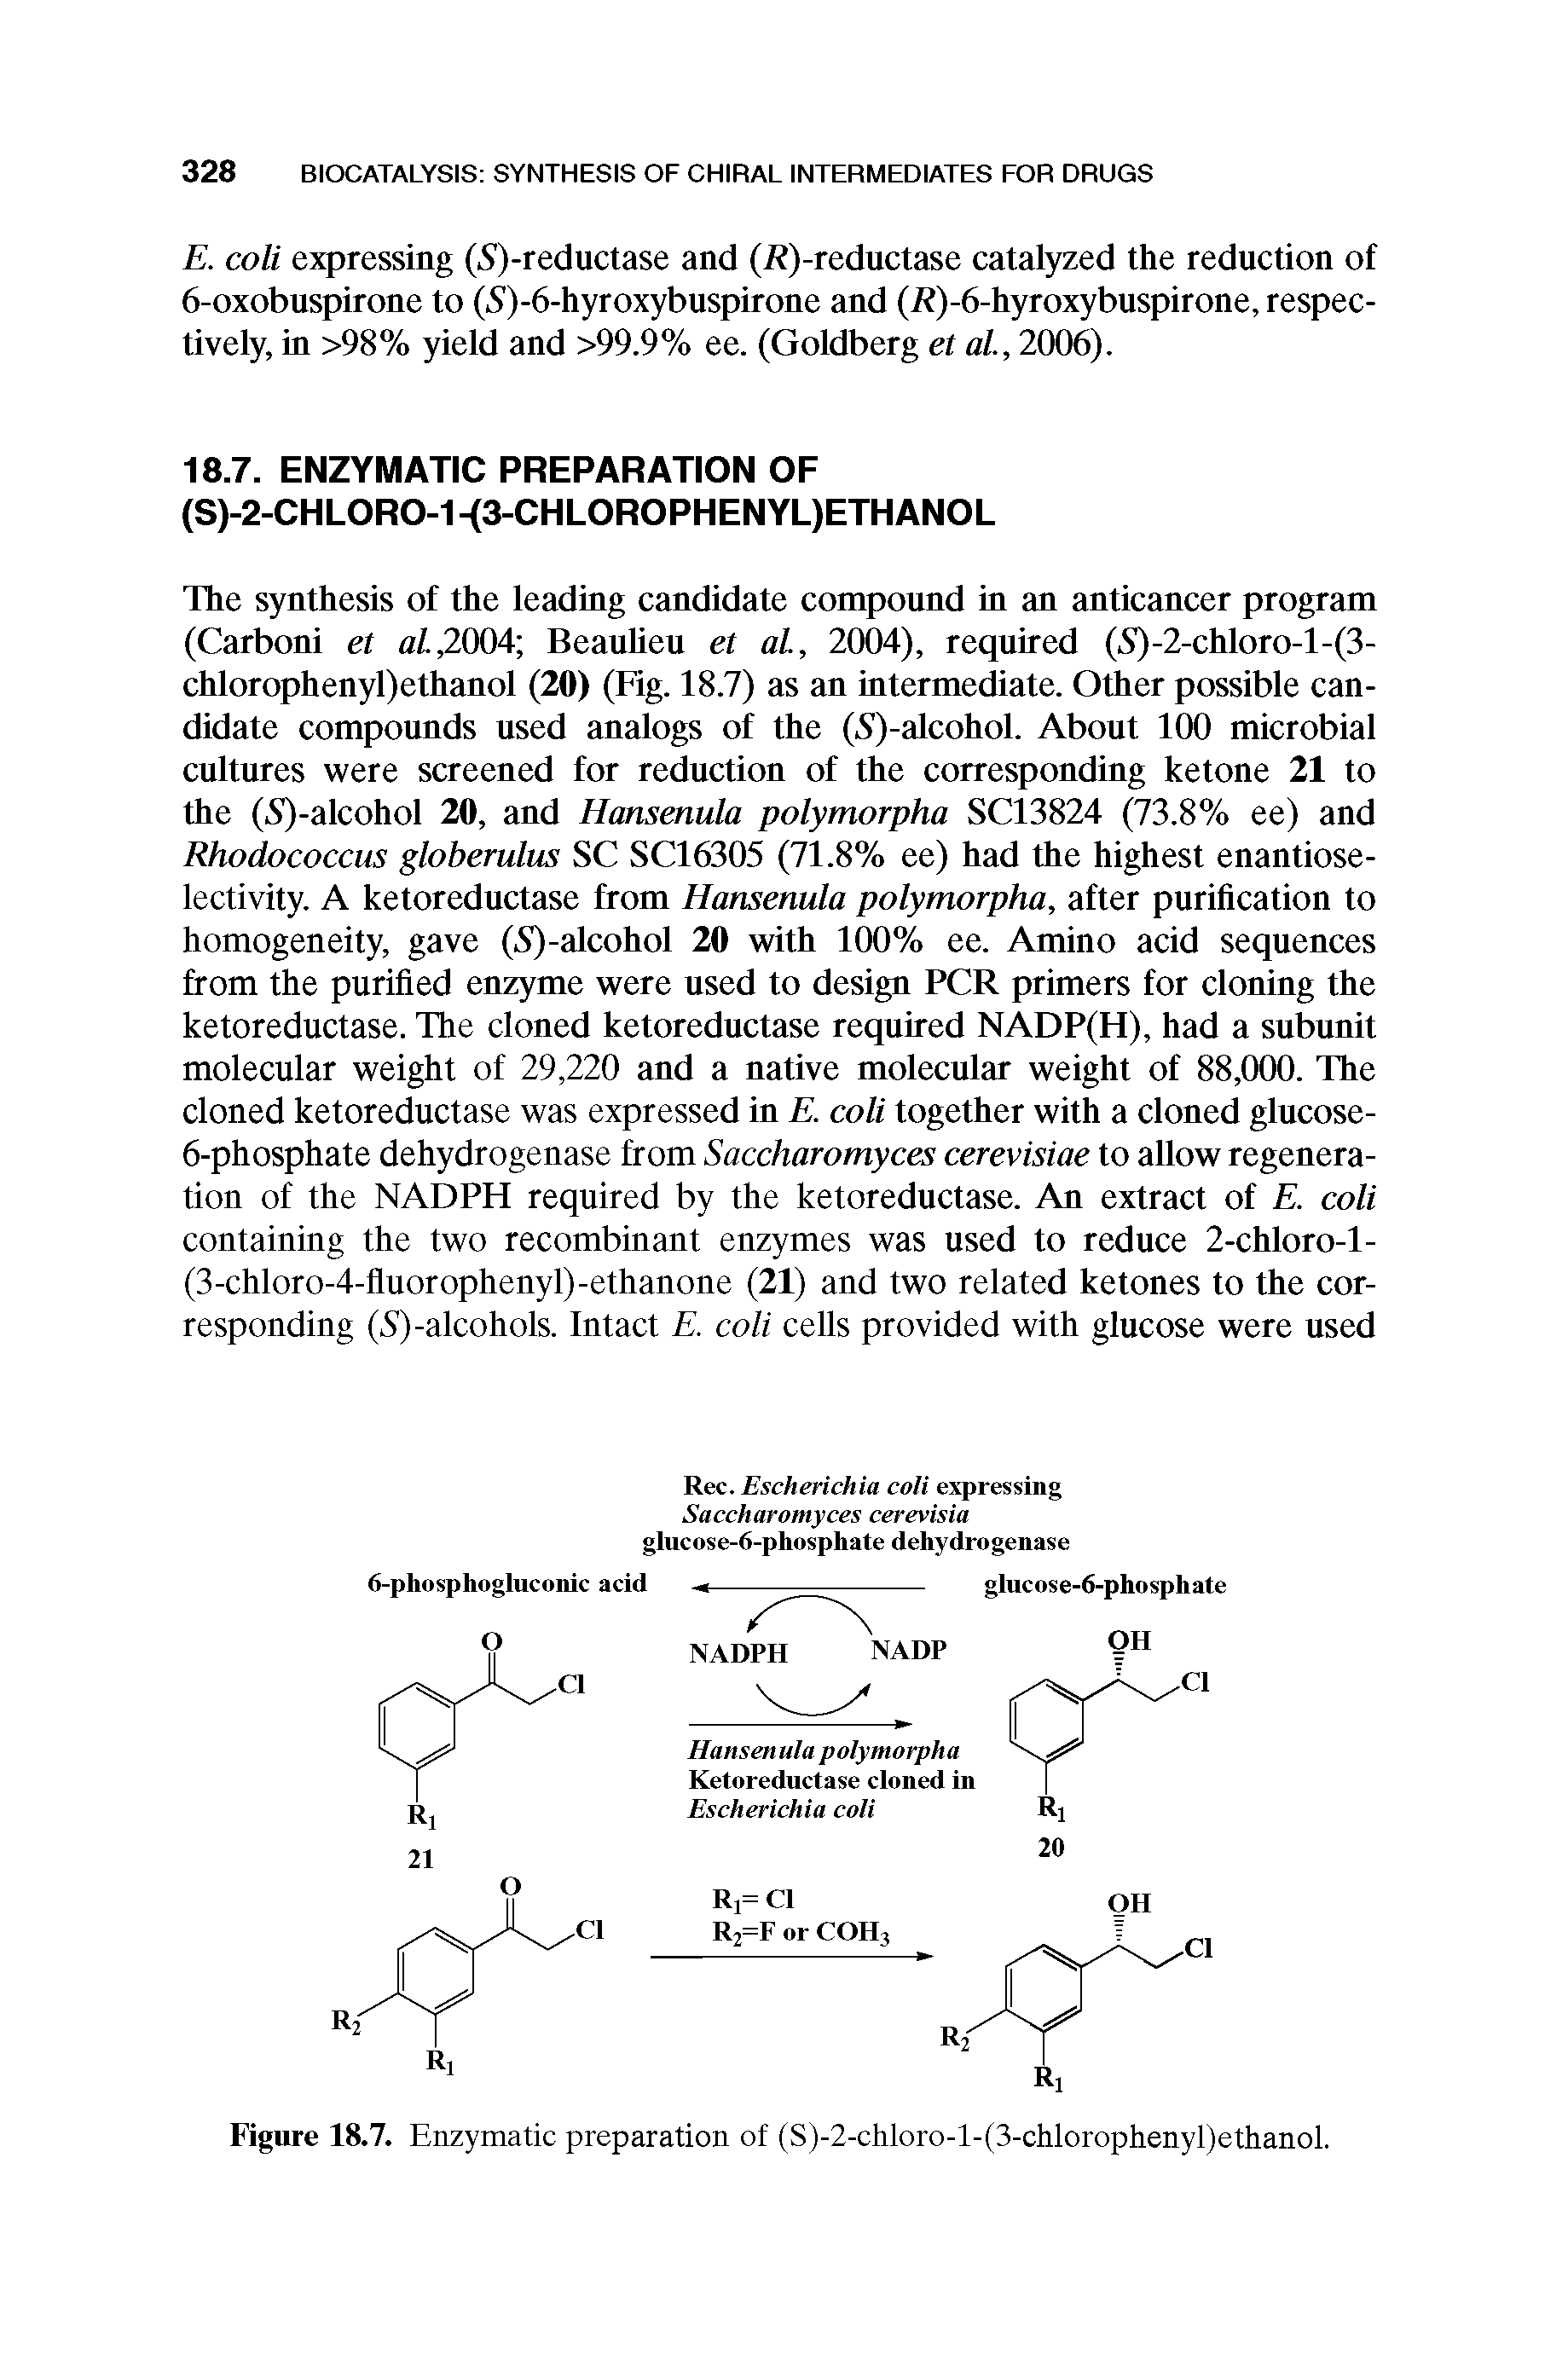 Figure 18.7. Enzymatic preparation of (S)-2-chloro-l-(3-chlorophenyl)ethanol.